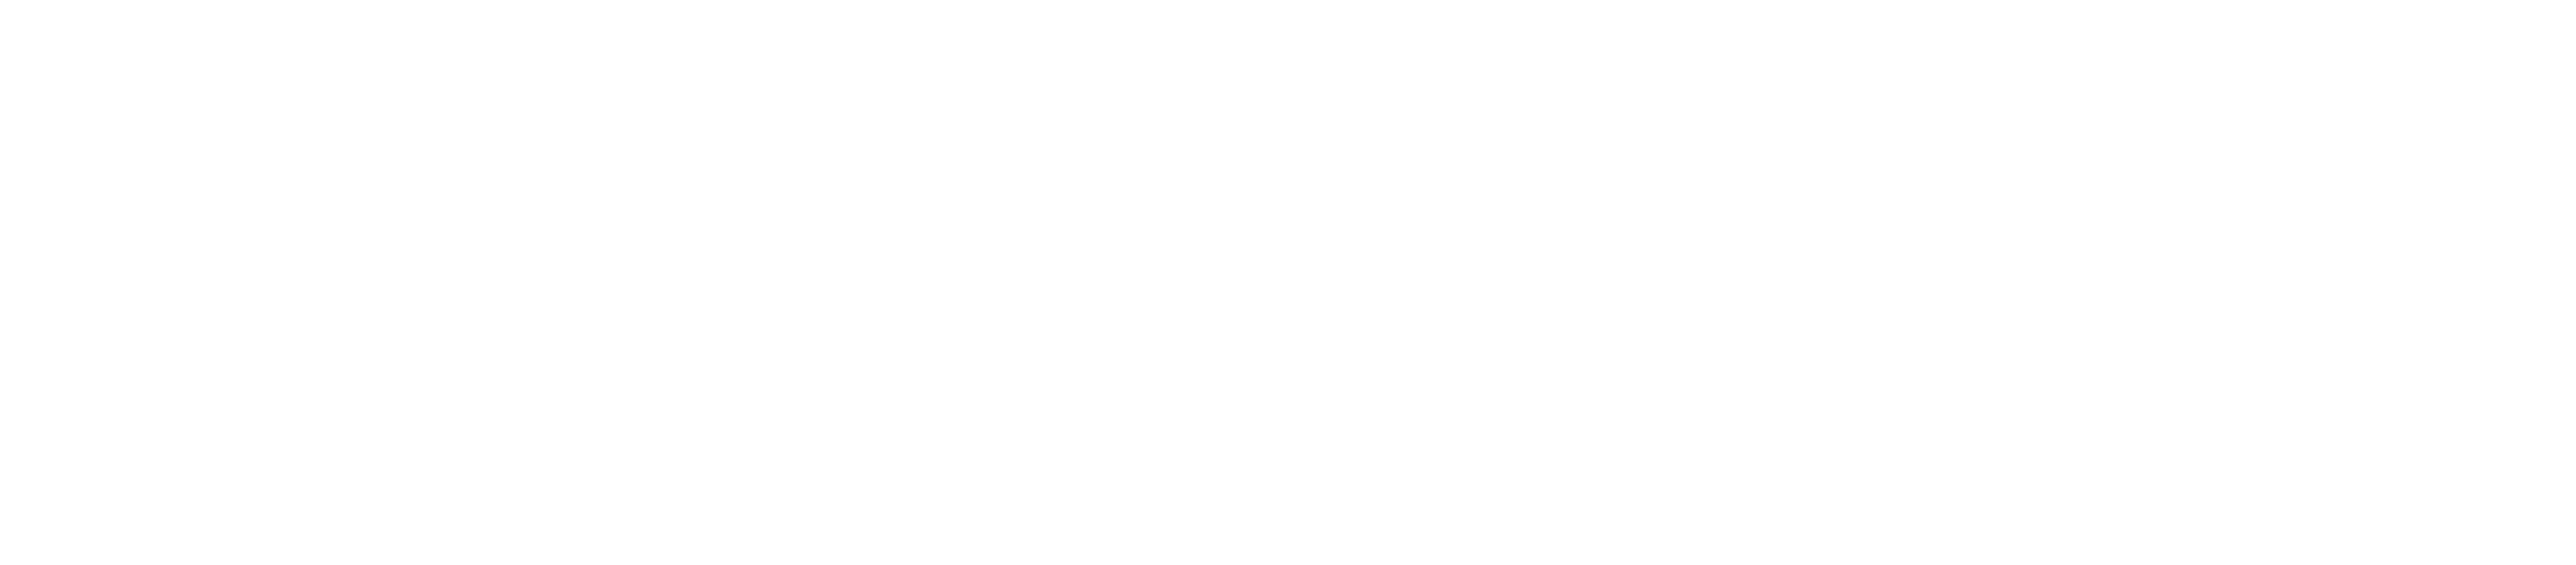 Balance Health logo-rev